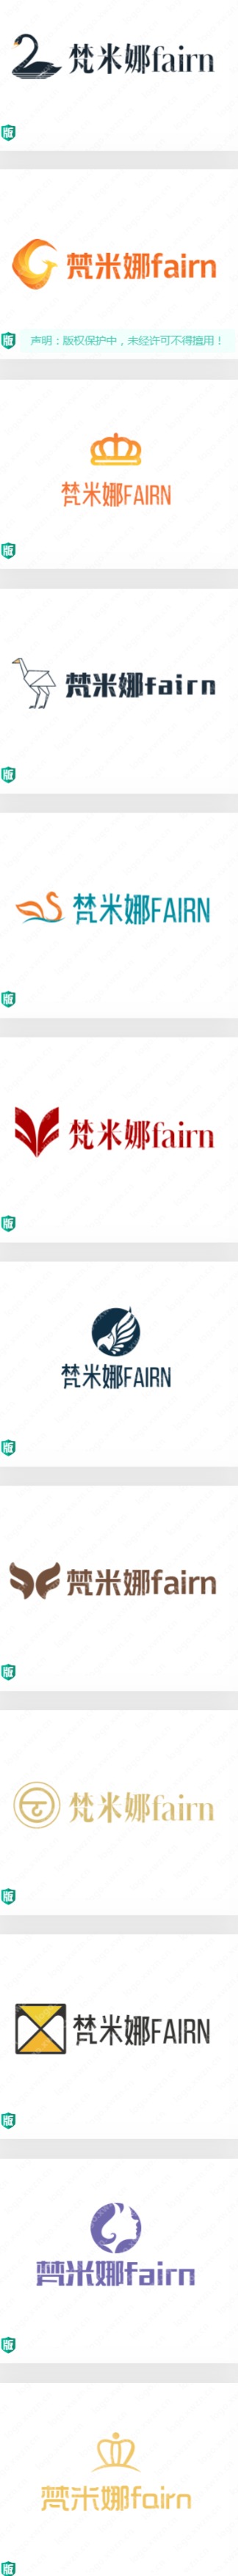 分享多组婀娜多姿的　(梵米娜fairn)logo设计案例